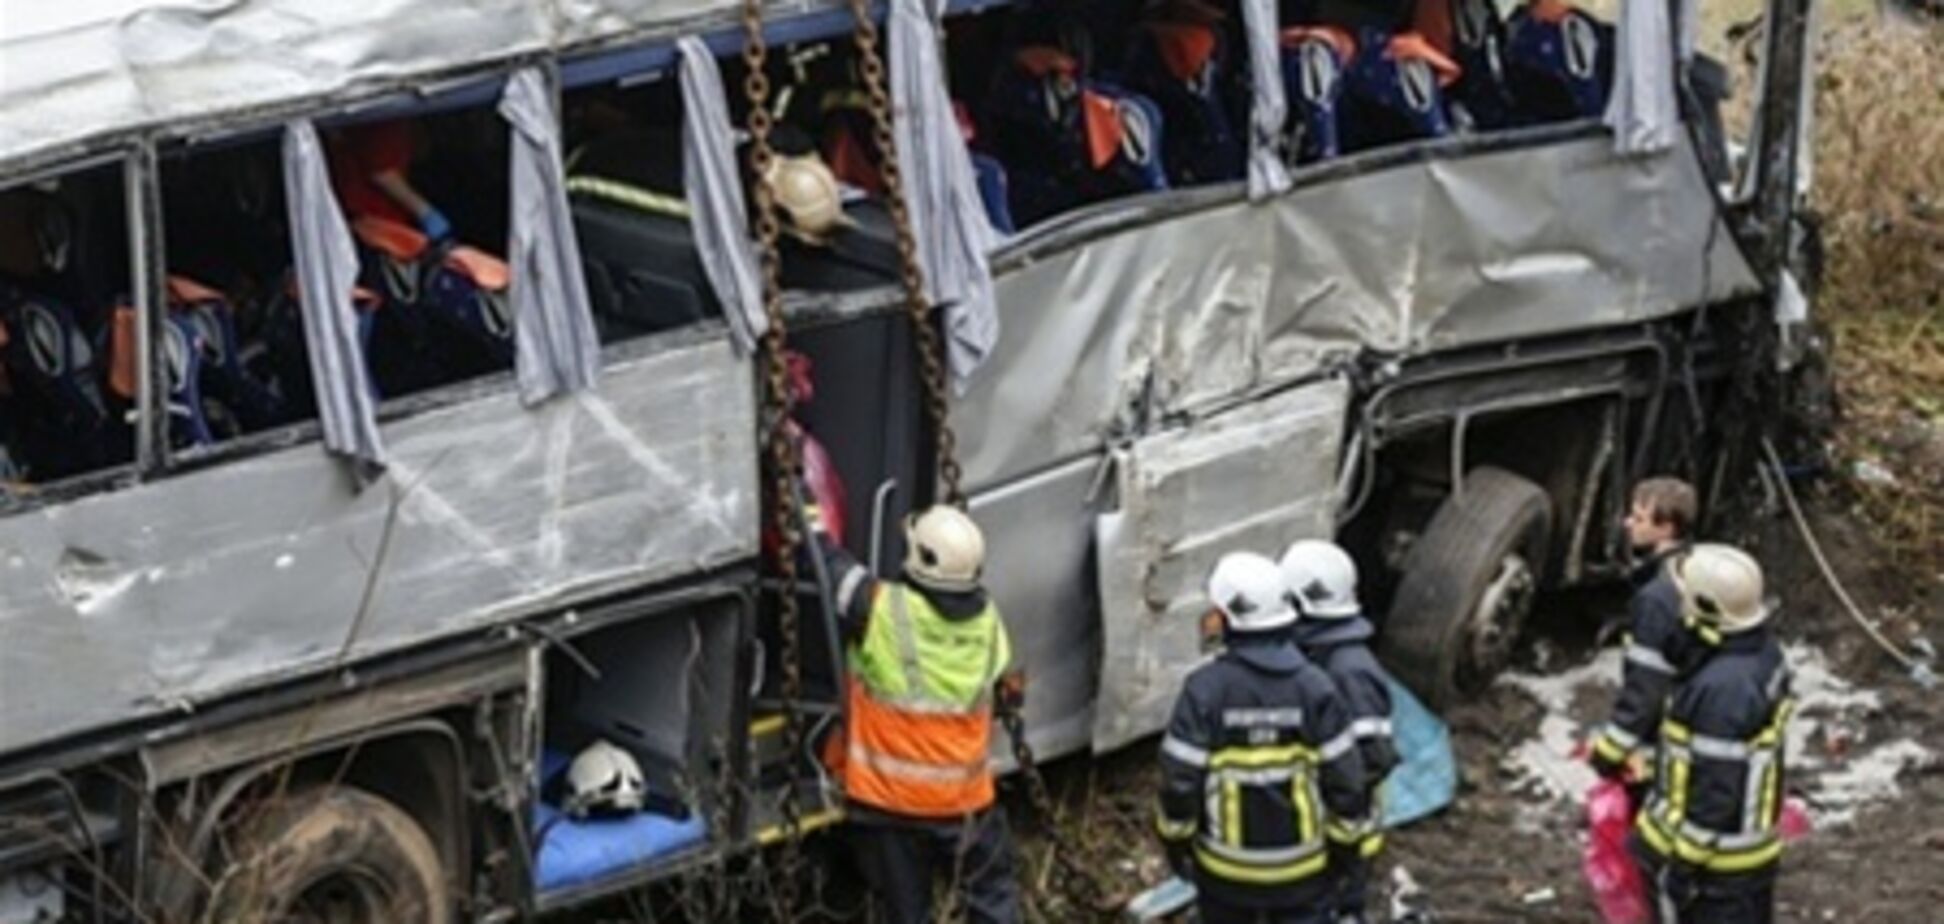 У водителя автобуса, разбившегося в Бельгии, мог случиться сердечный приступ